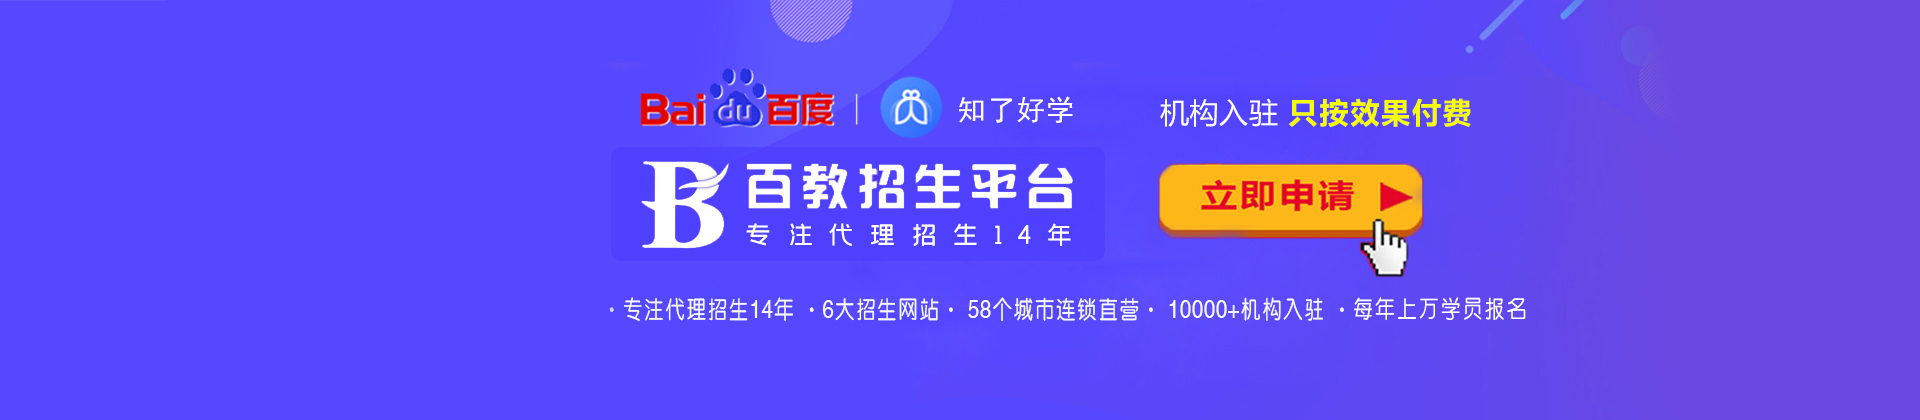 广州百教网-中国硬实力、高品质招生平台